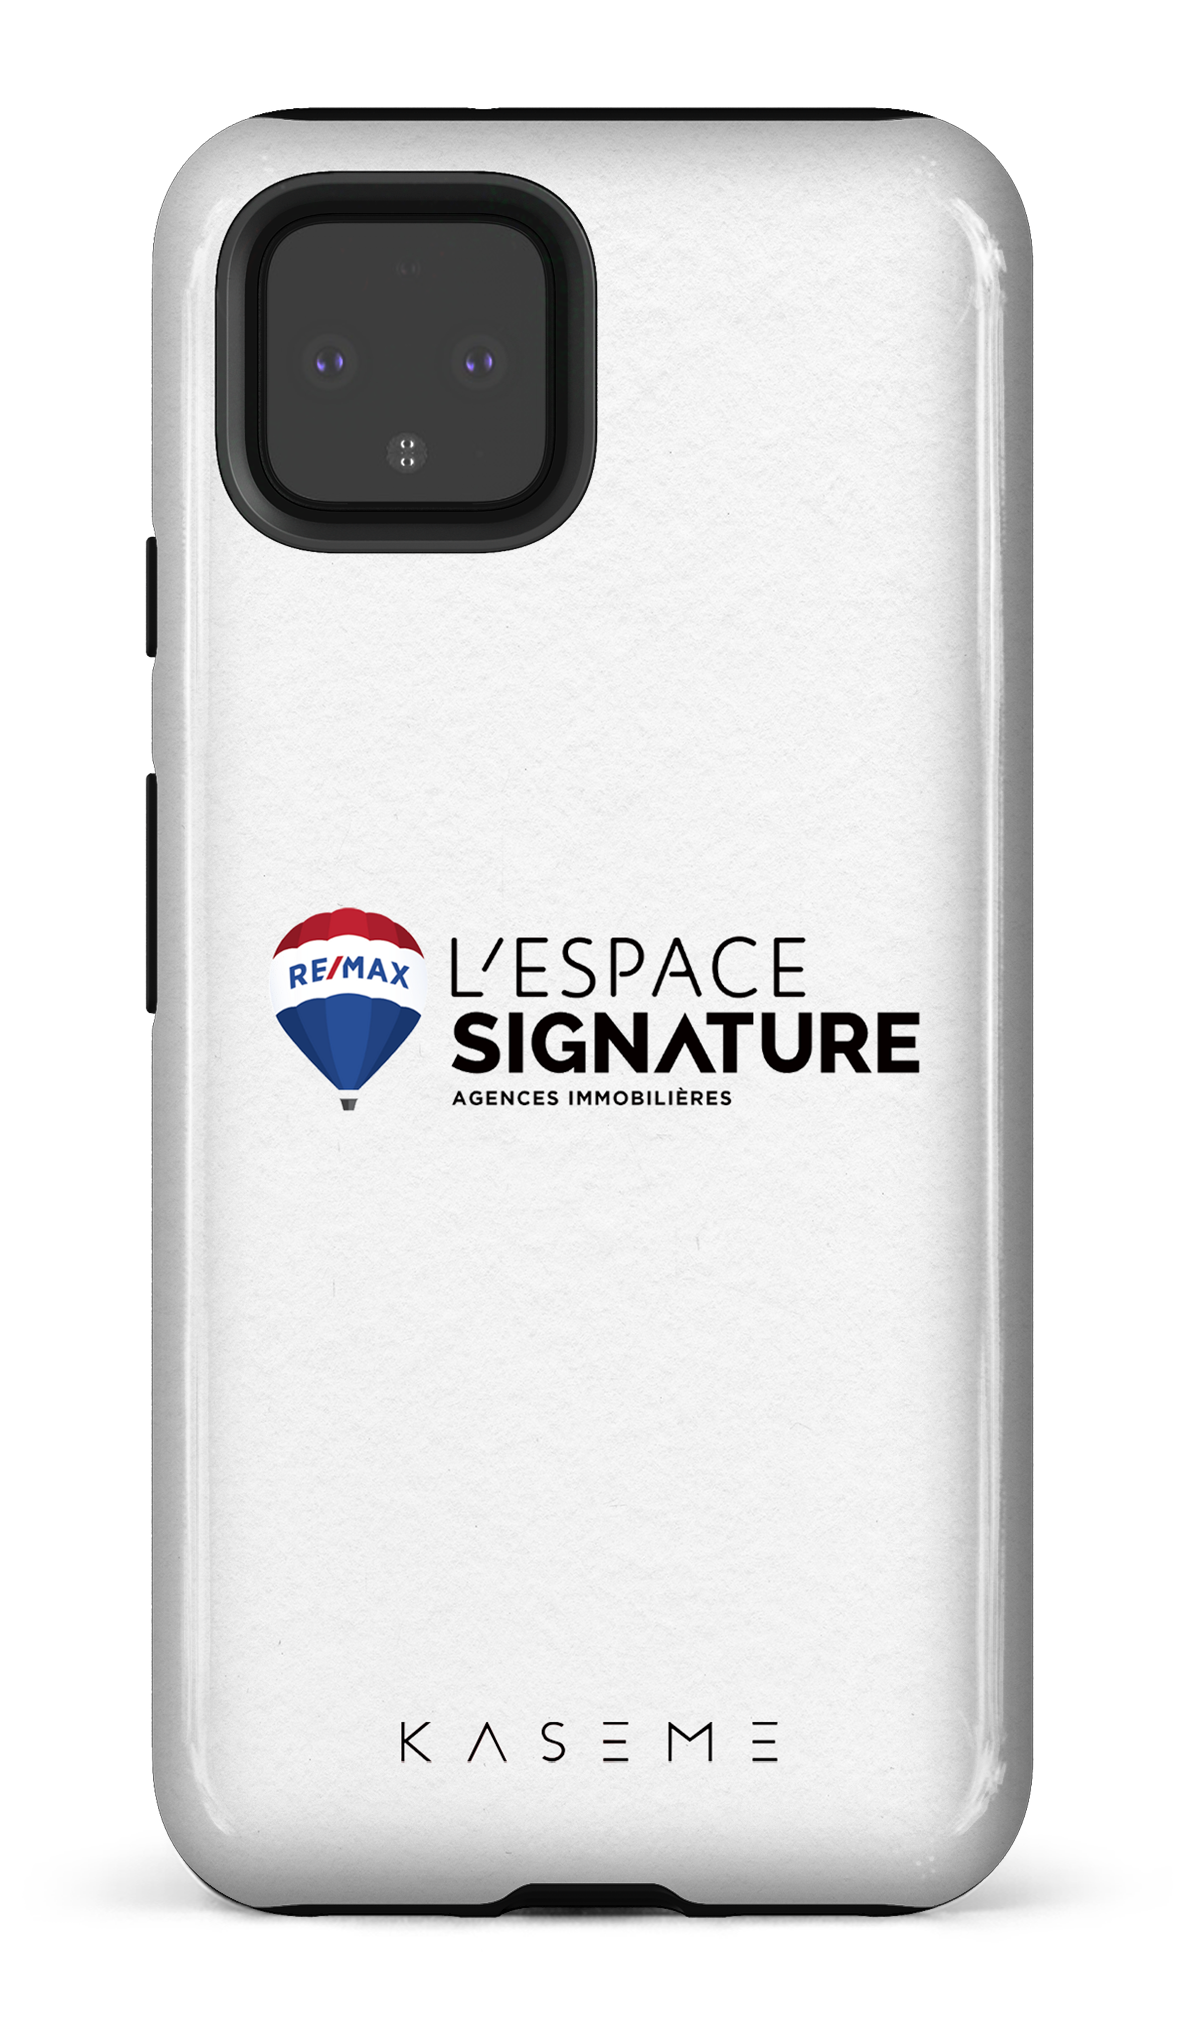 Remax Signature L'Espace Blanc - Google Pixel 4